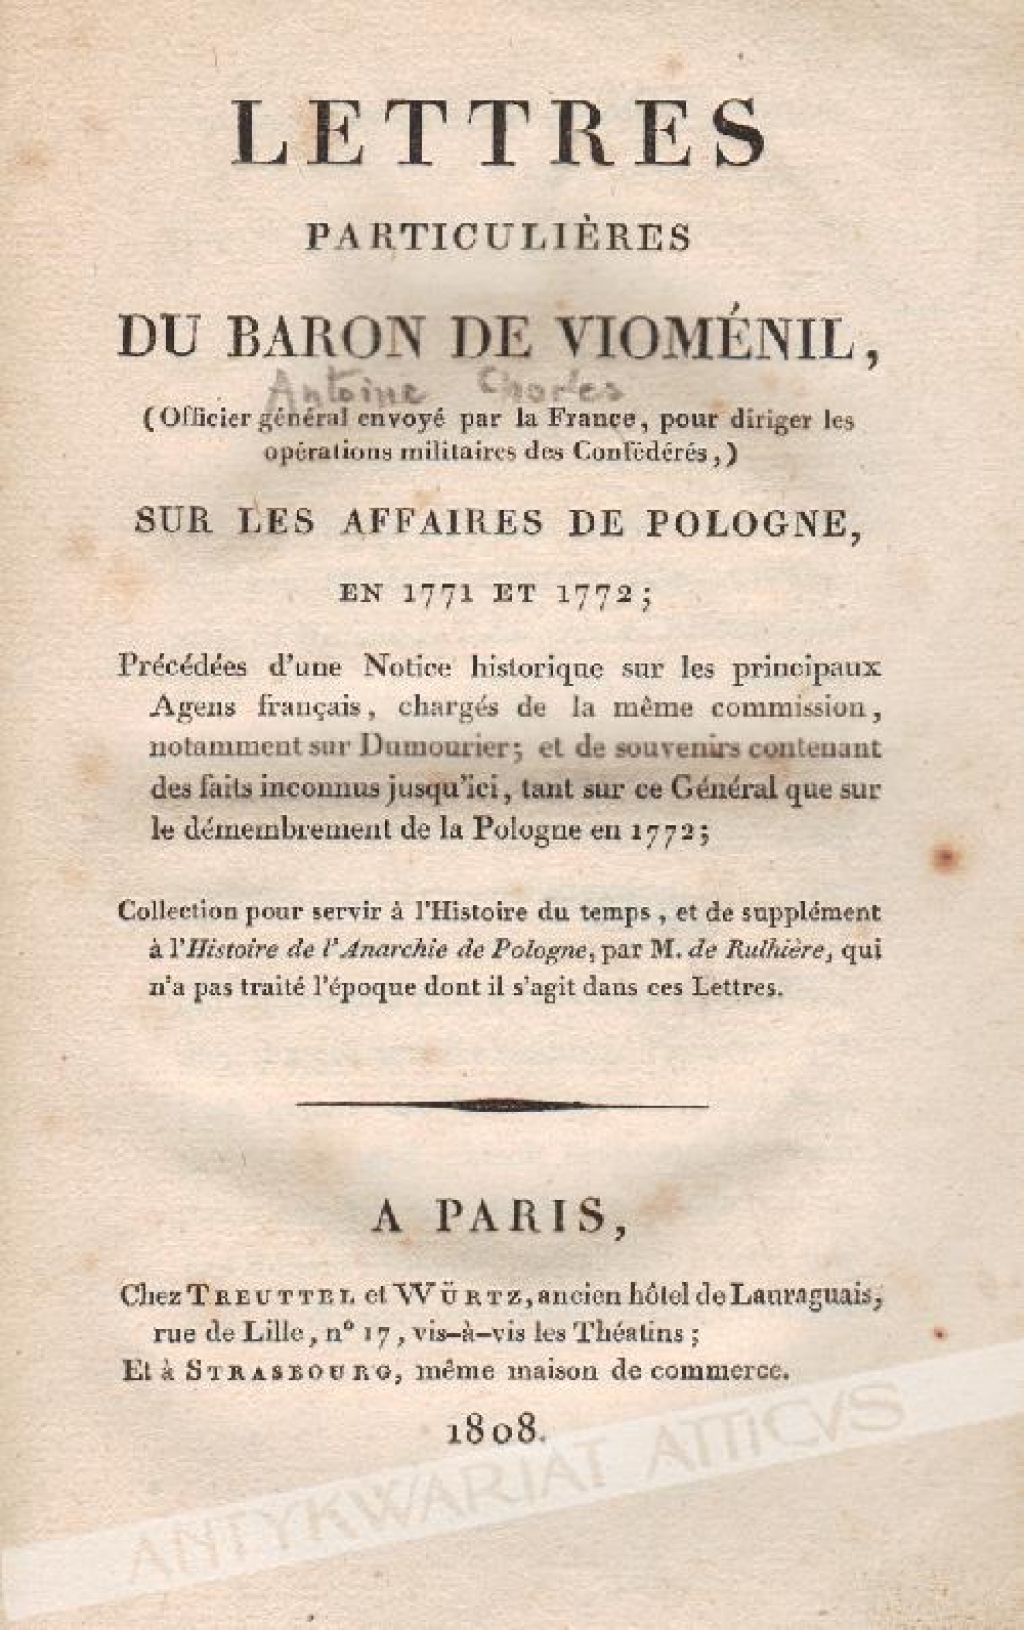 Lettres particulieres du Baron de Viomenil sur les affaires de Pologne, en 1771 et 1772